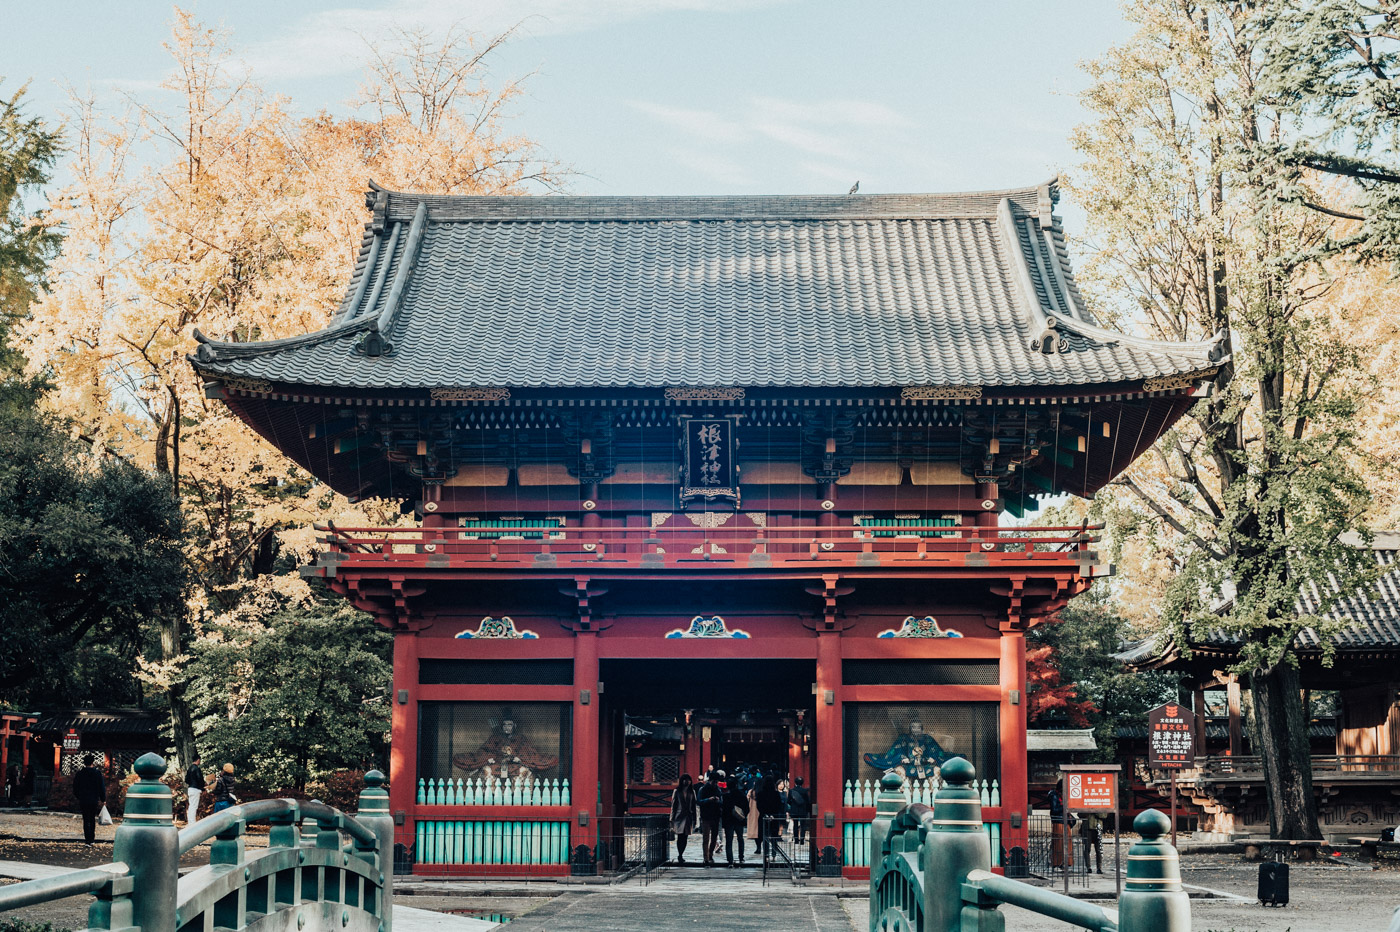 湯島天満宮と根津神社をはしごして神秘的な気分に浸ってみた。